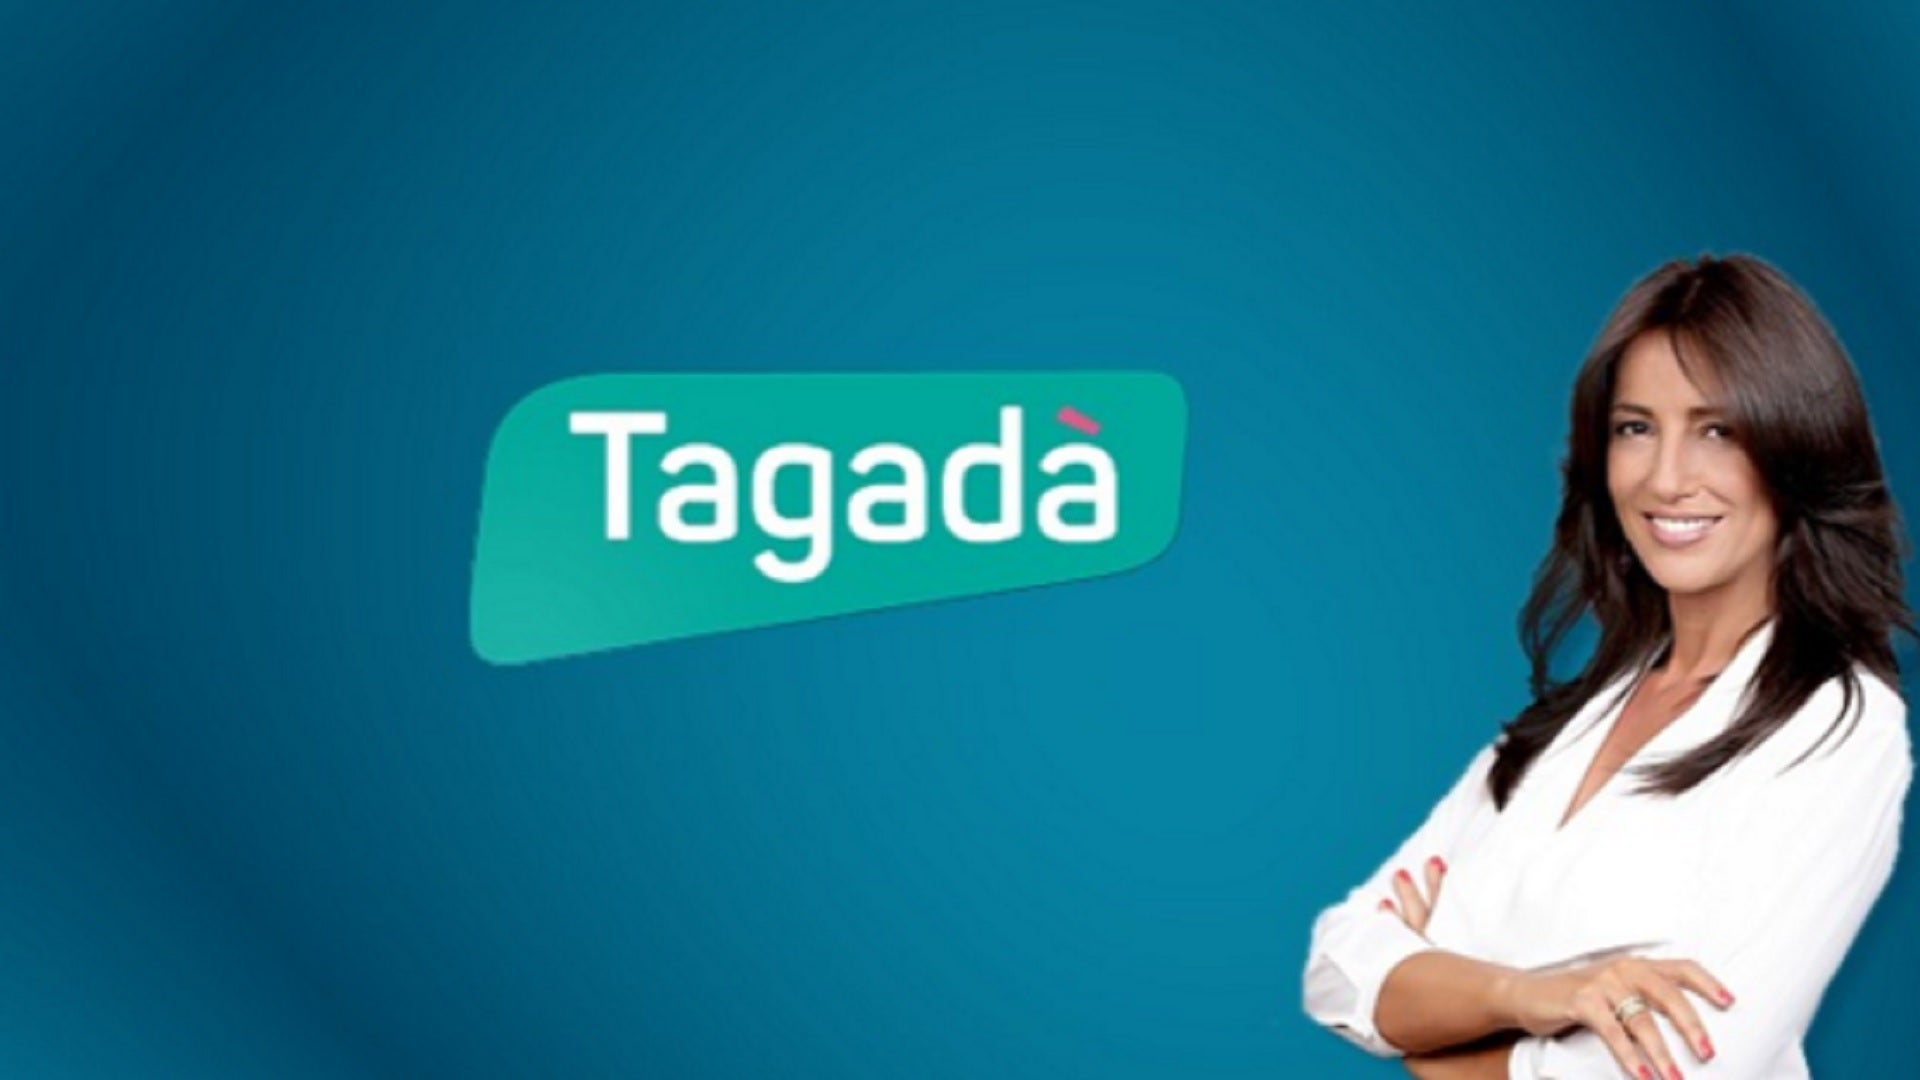 TV ratings for Tagadà in South Korea. La7 TV series